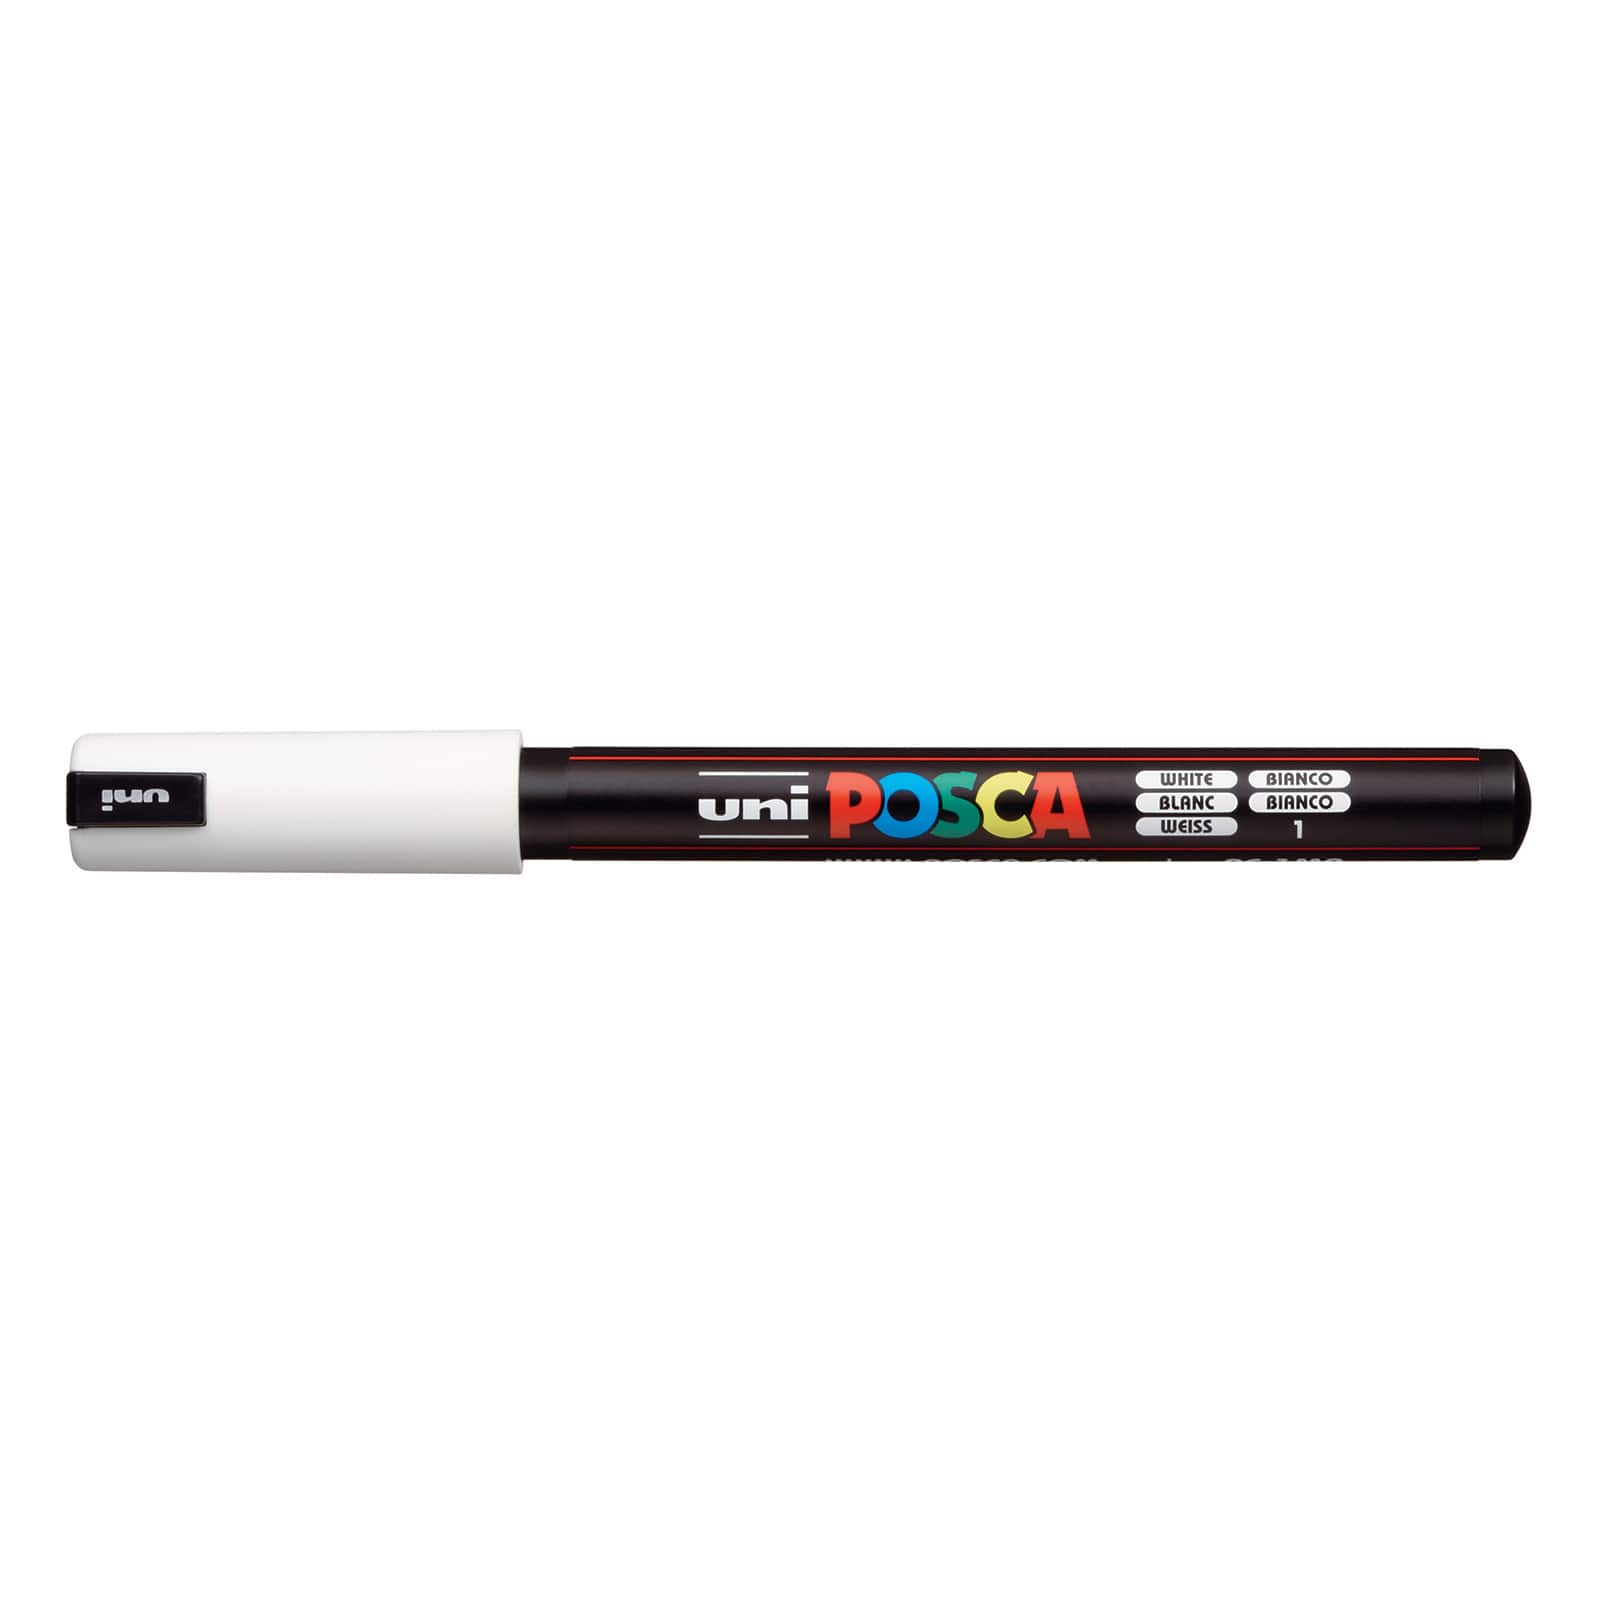 Uni POSCA Marker Pen PC-1MR - Ultra Fine 0.7mm - Collection Box of